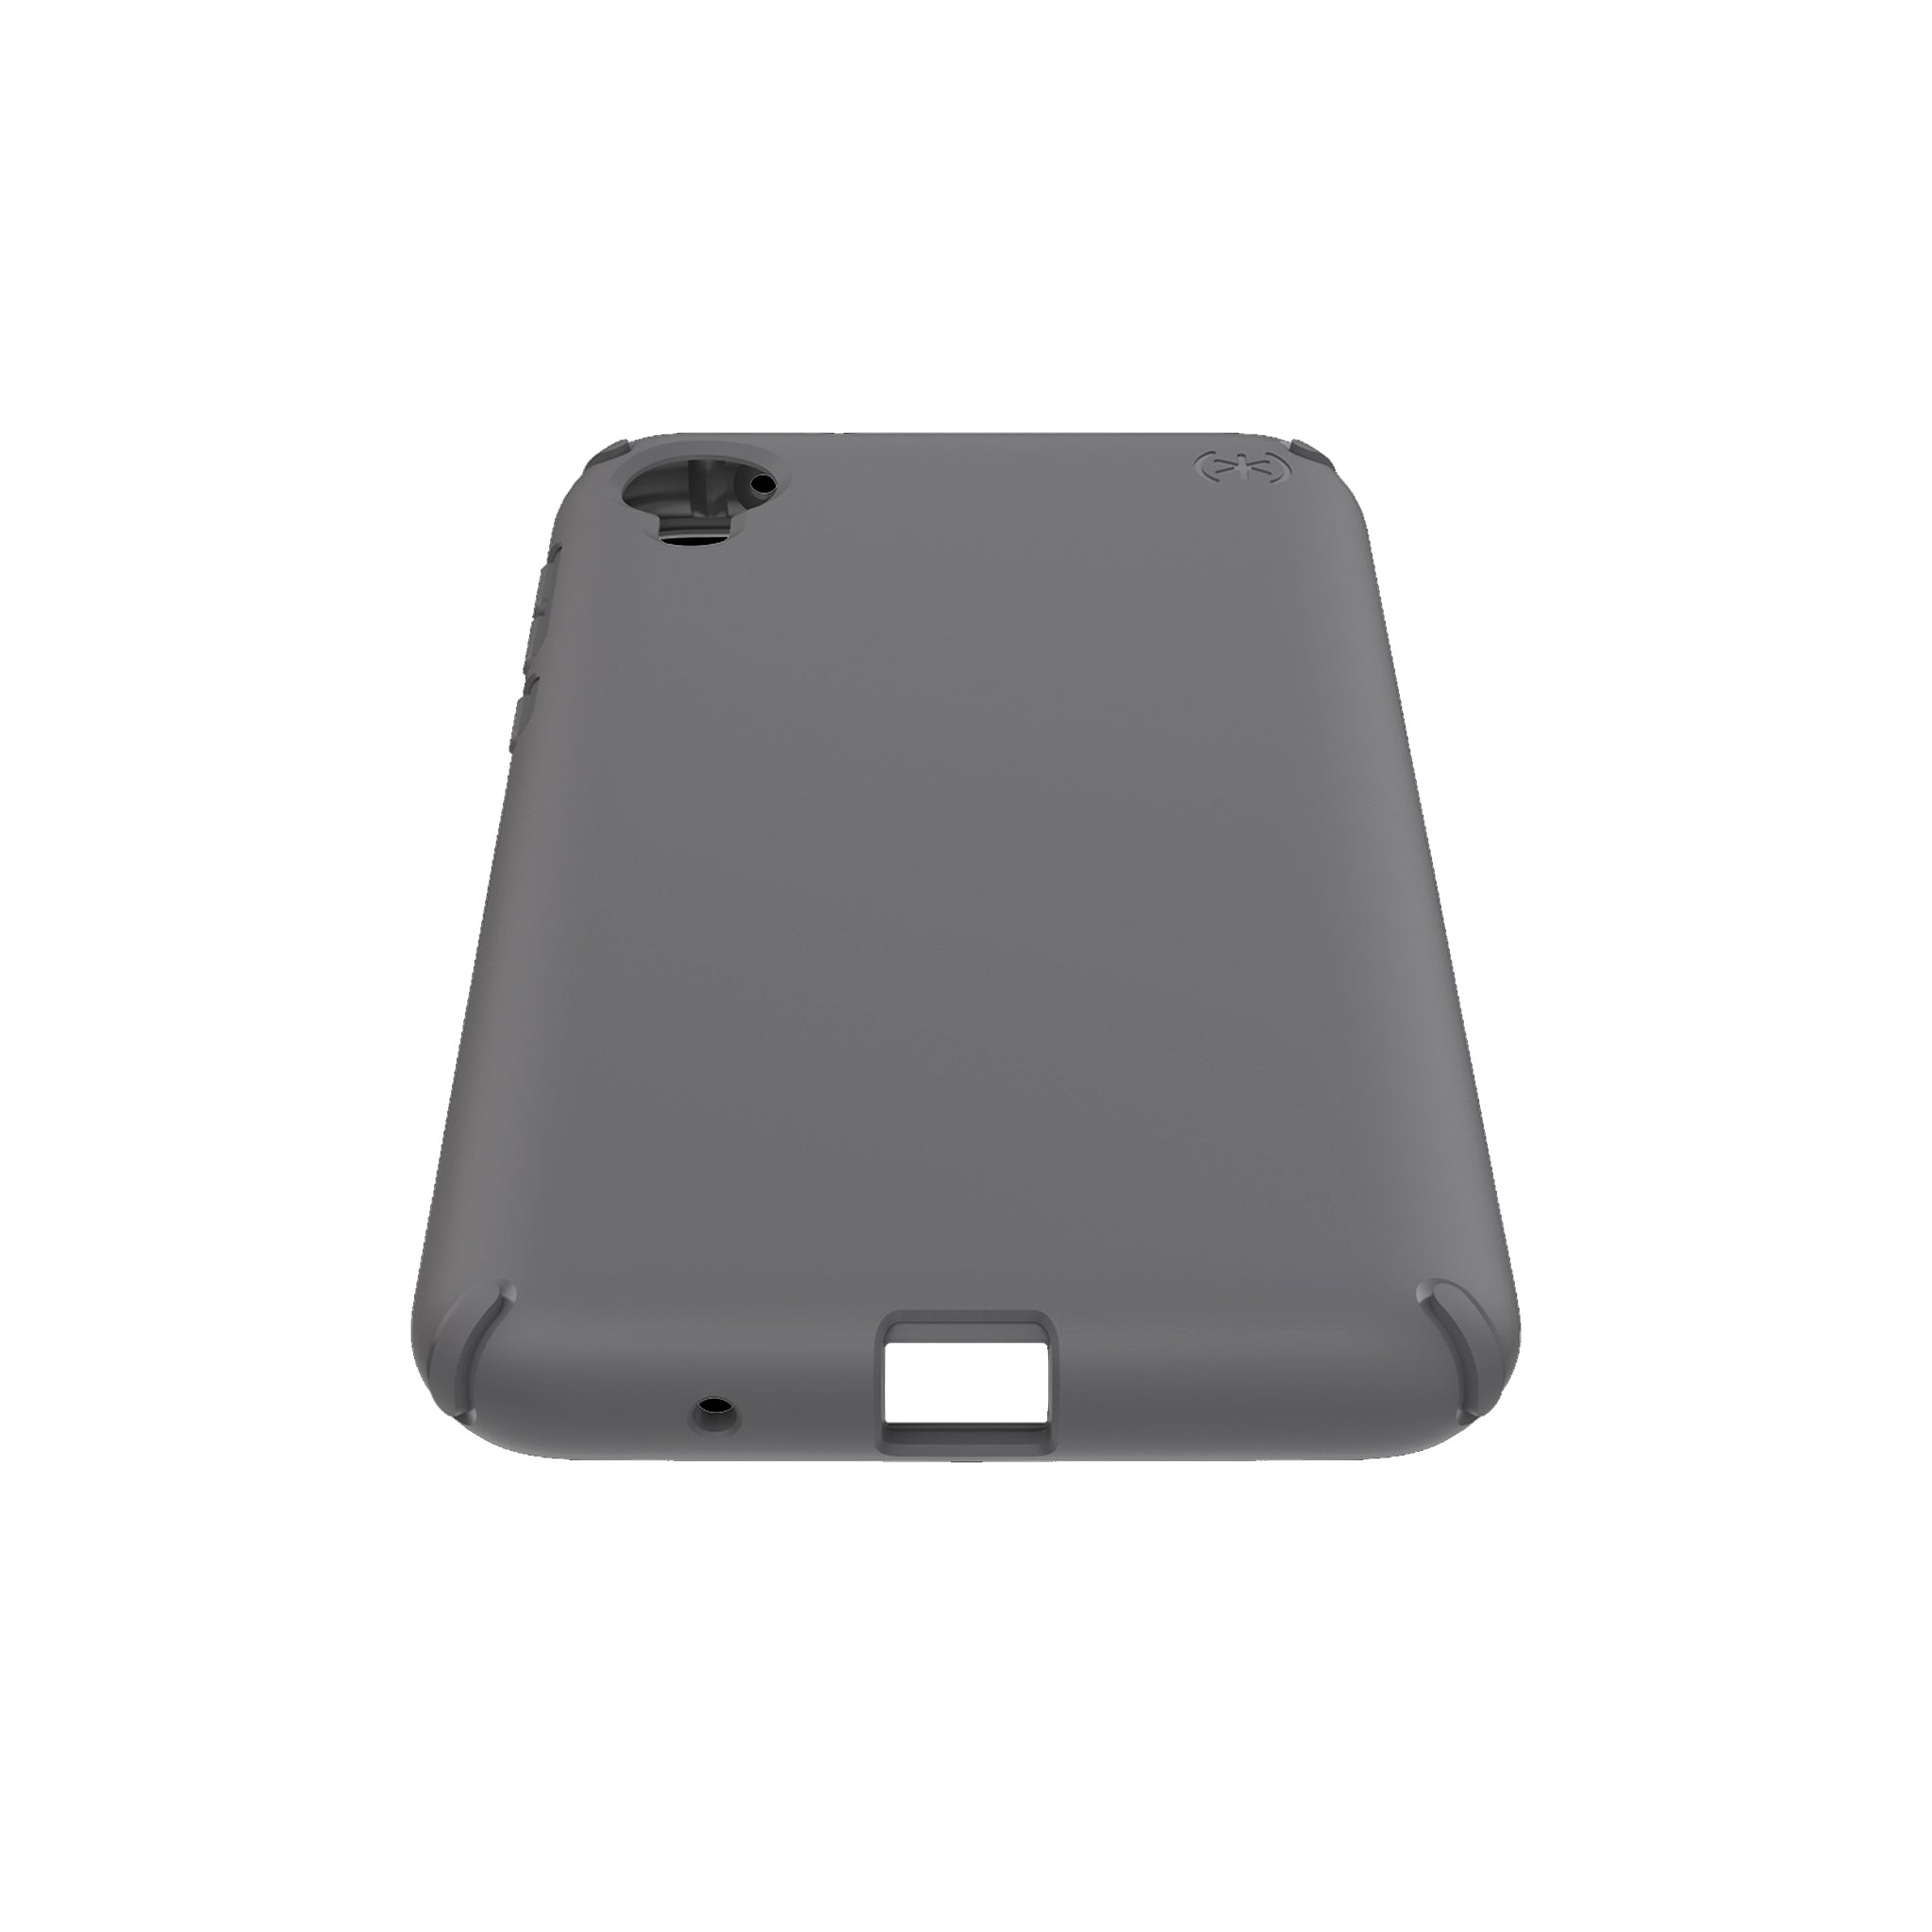 Speck - Presidio Lite Case For Motorola Moto E6 - Graphite Gray